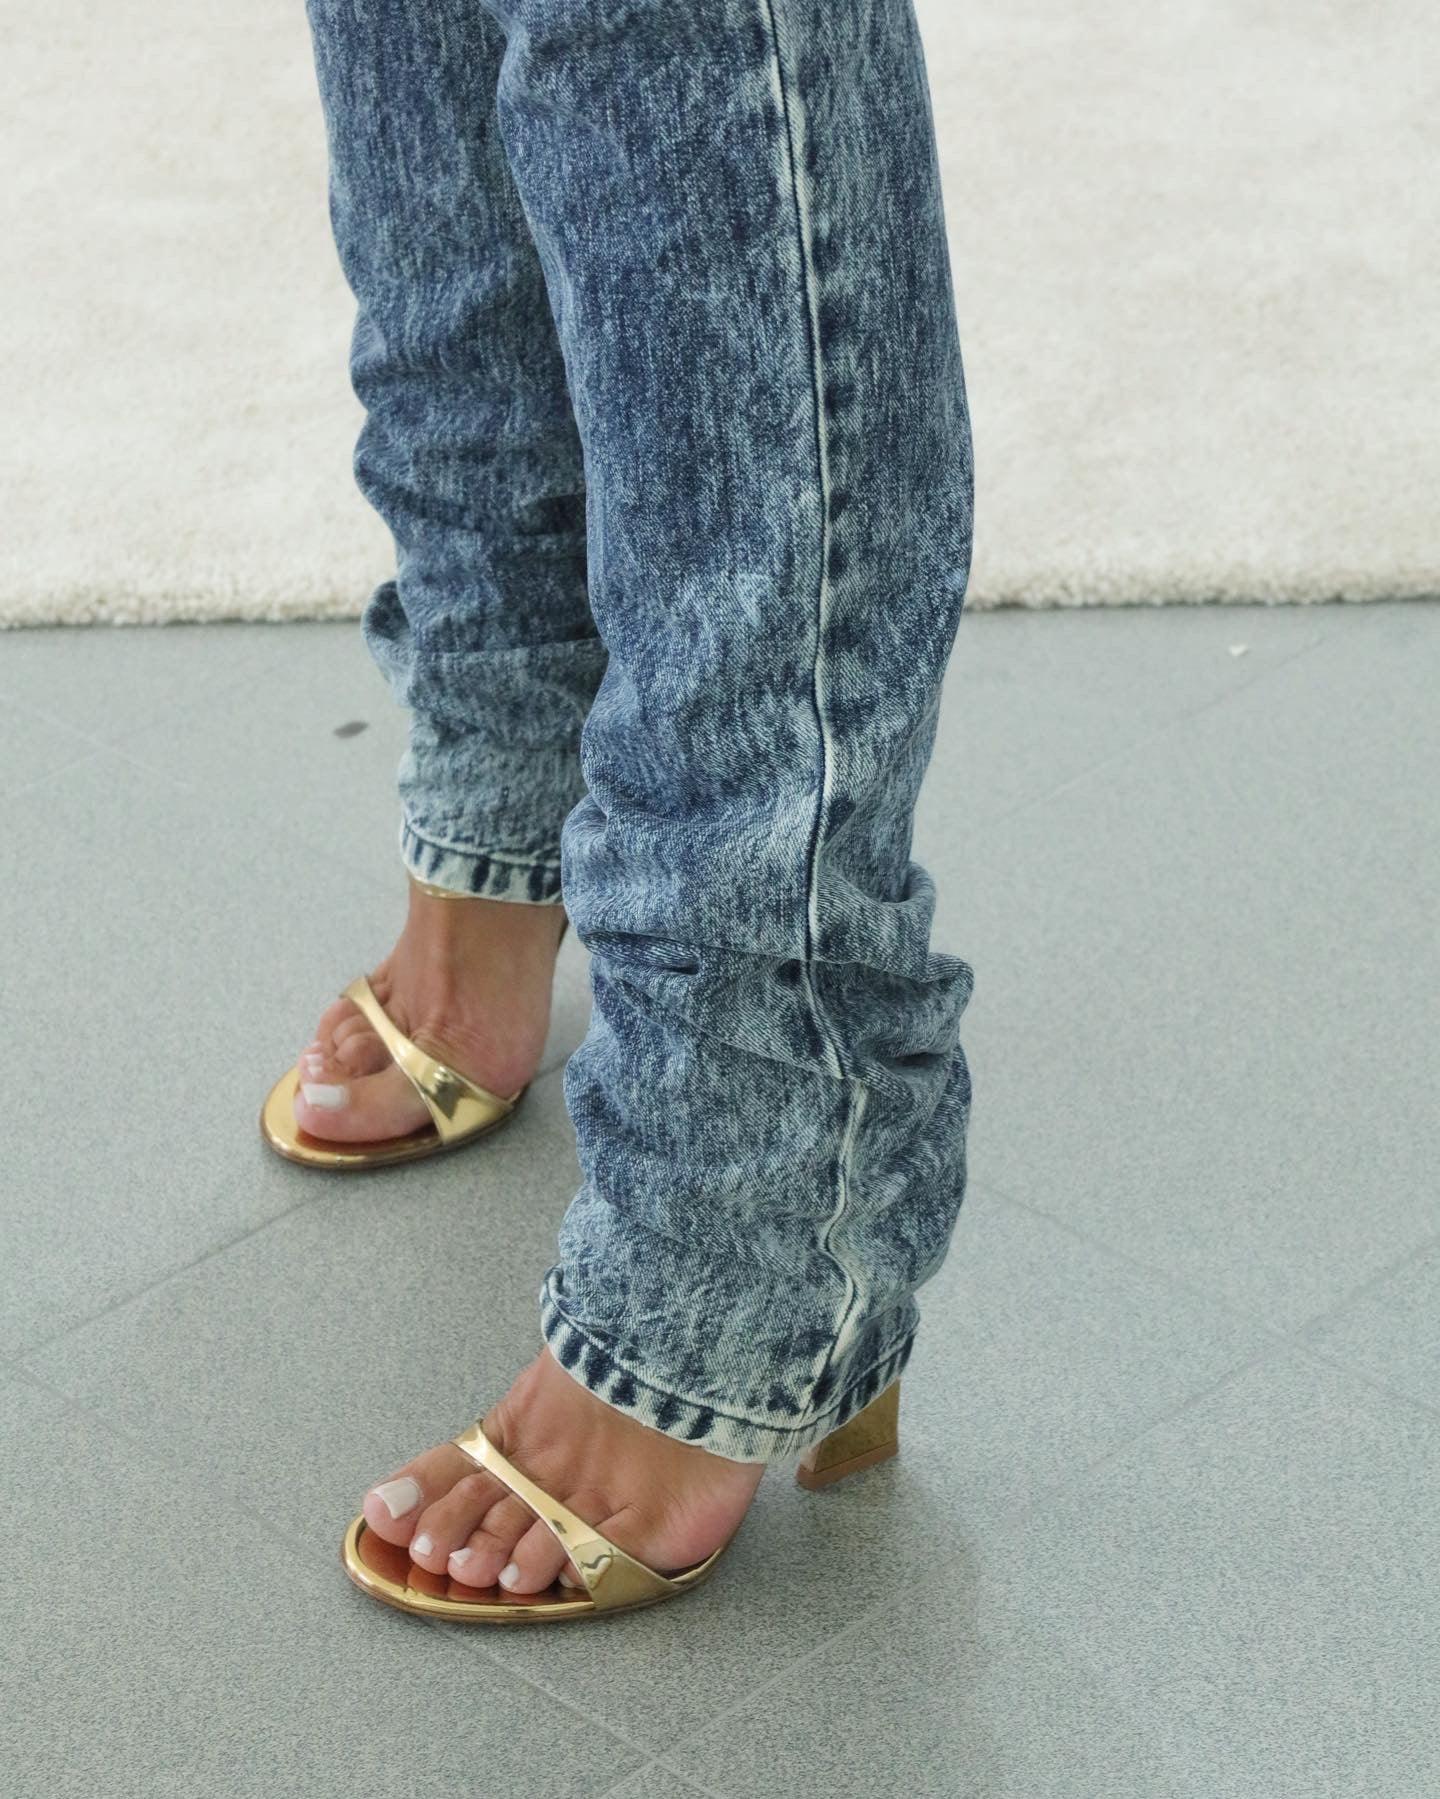 MIU MIU Jeans - THE VOG CLOSET